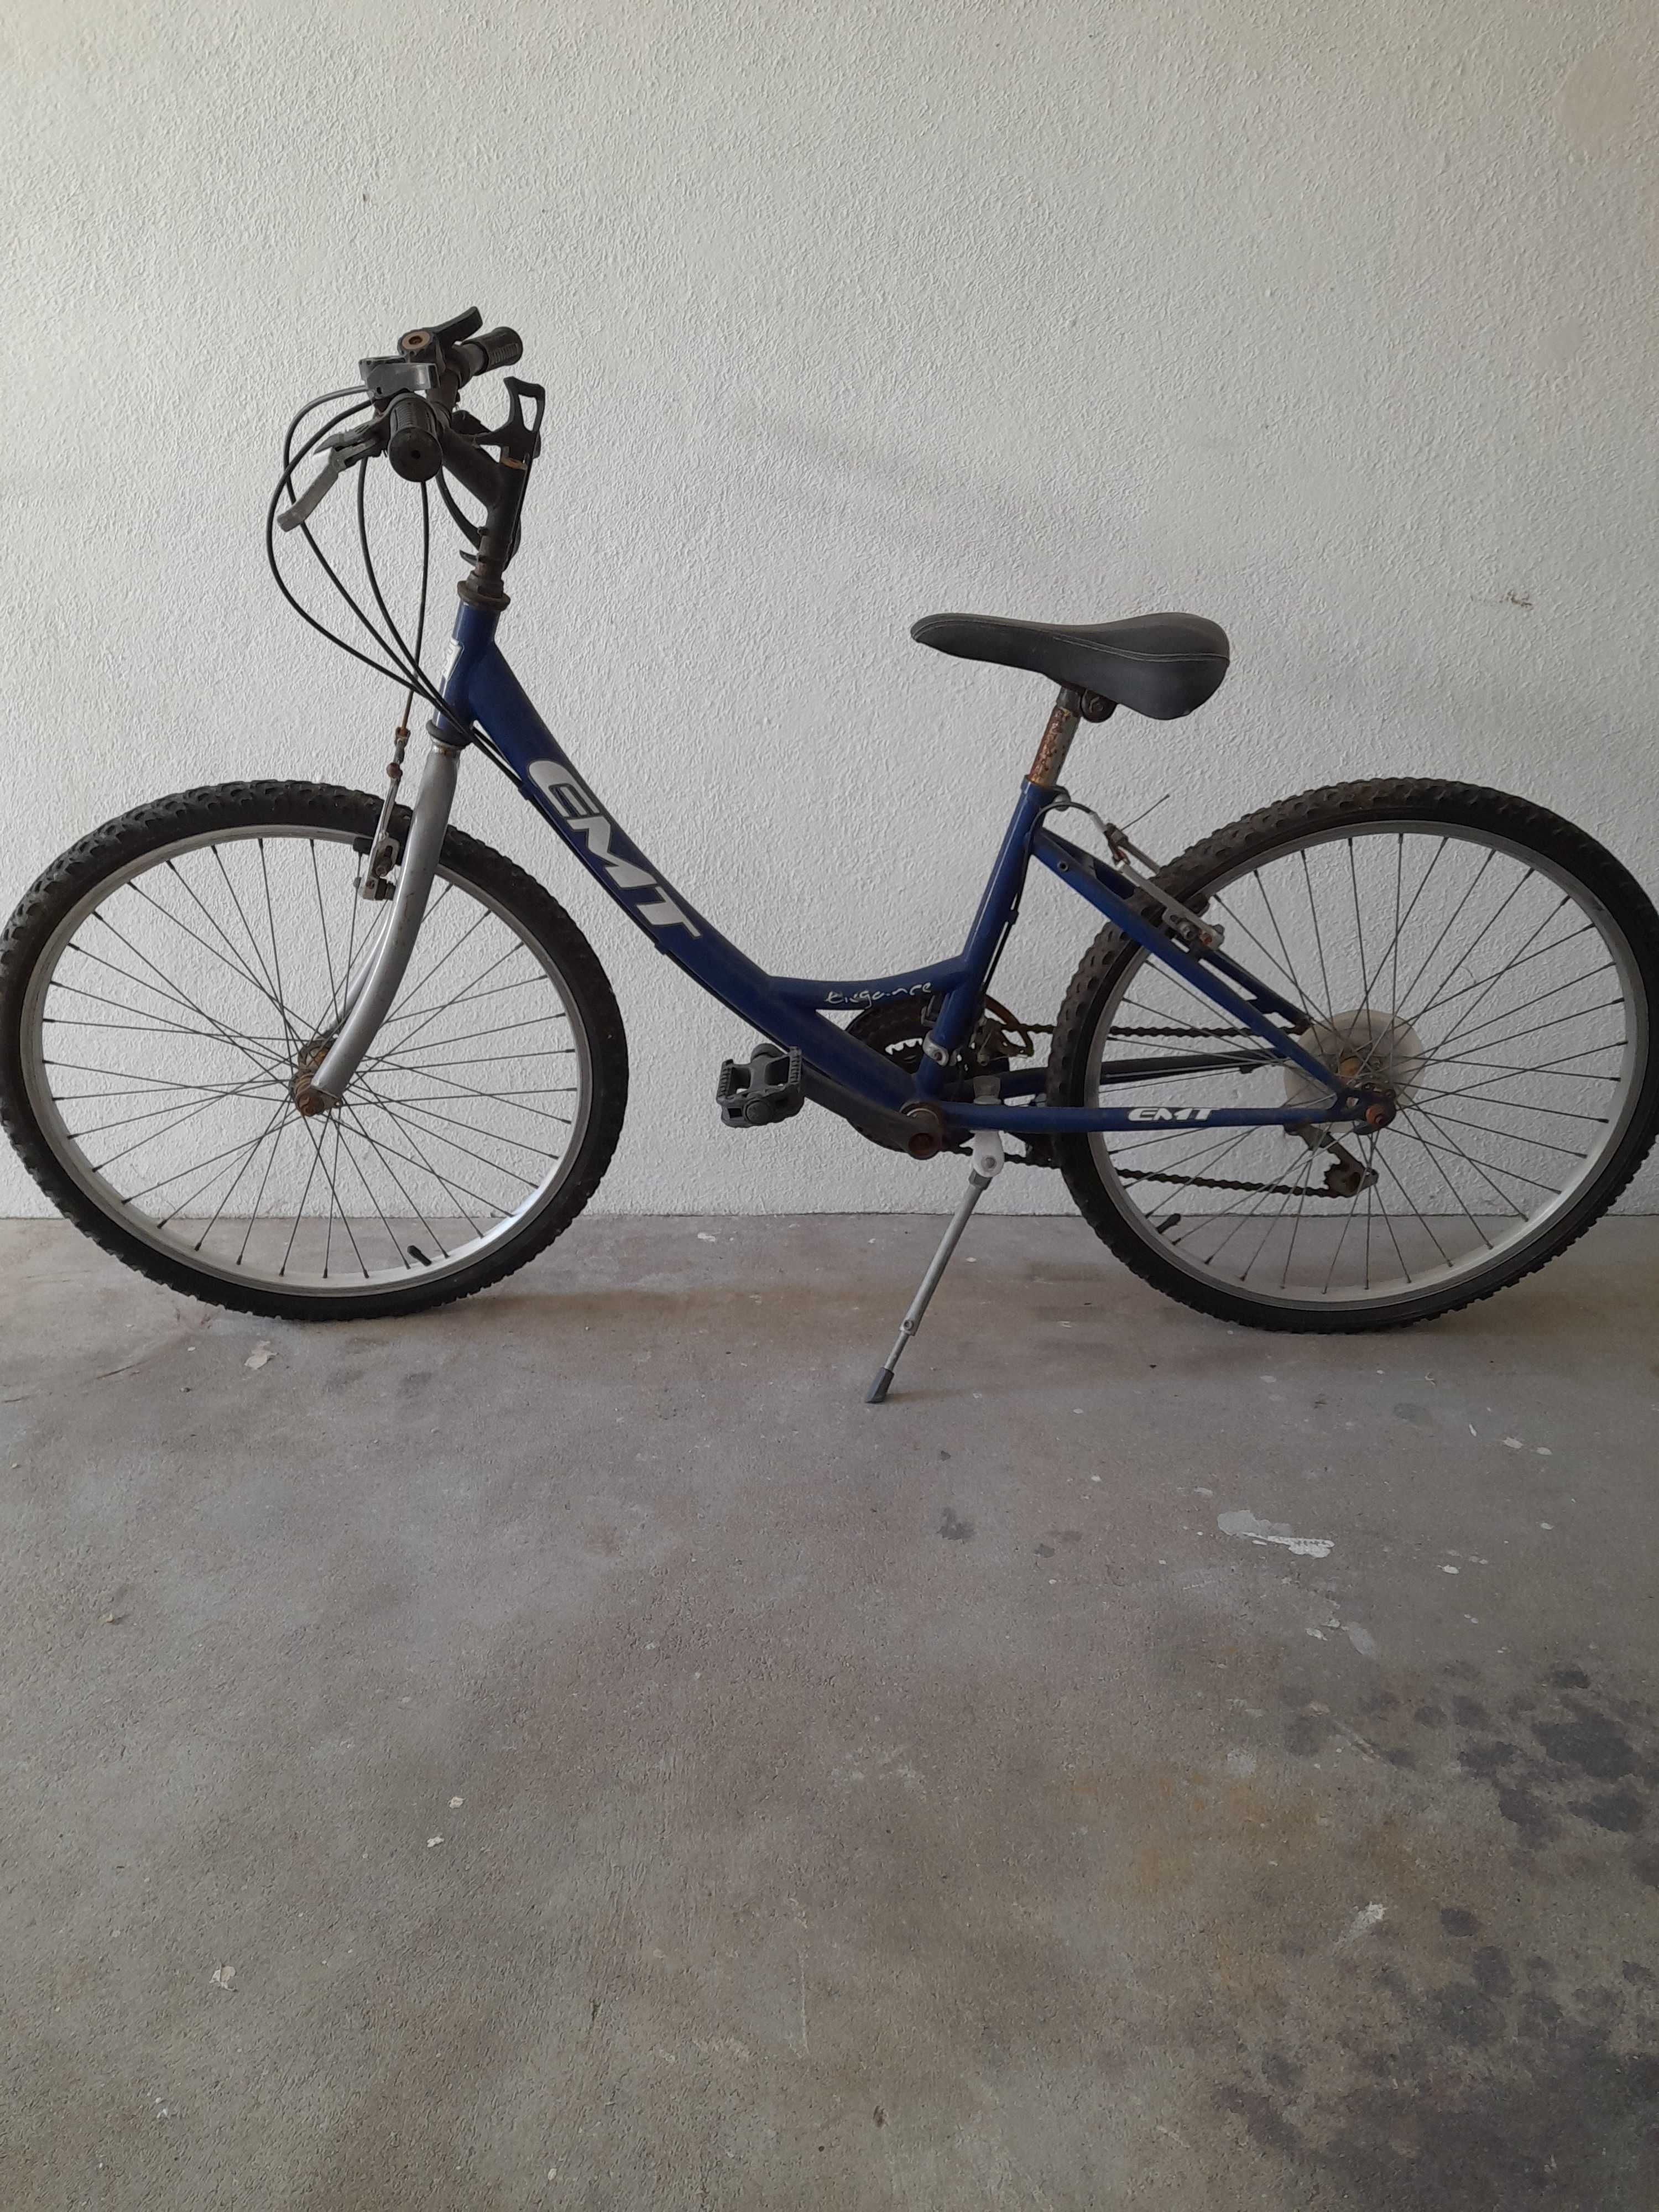 LIQUIDAR - 2 bicicletas citadinas usadas (necessária reparação)